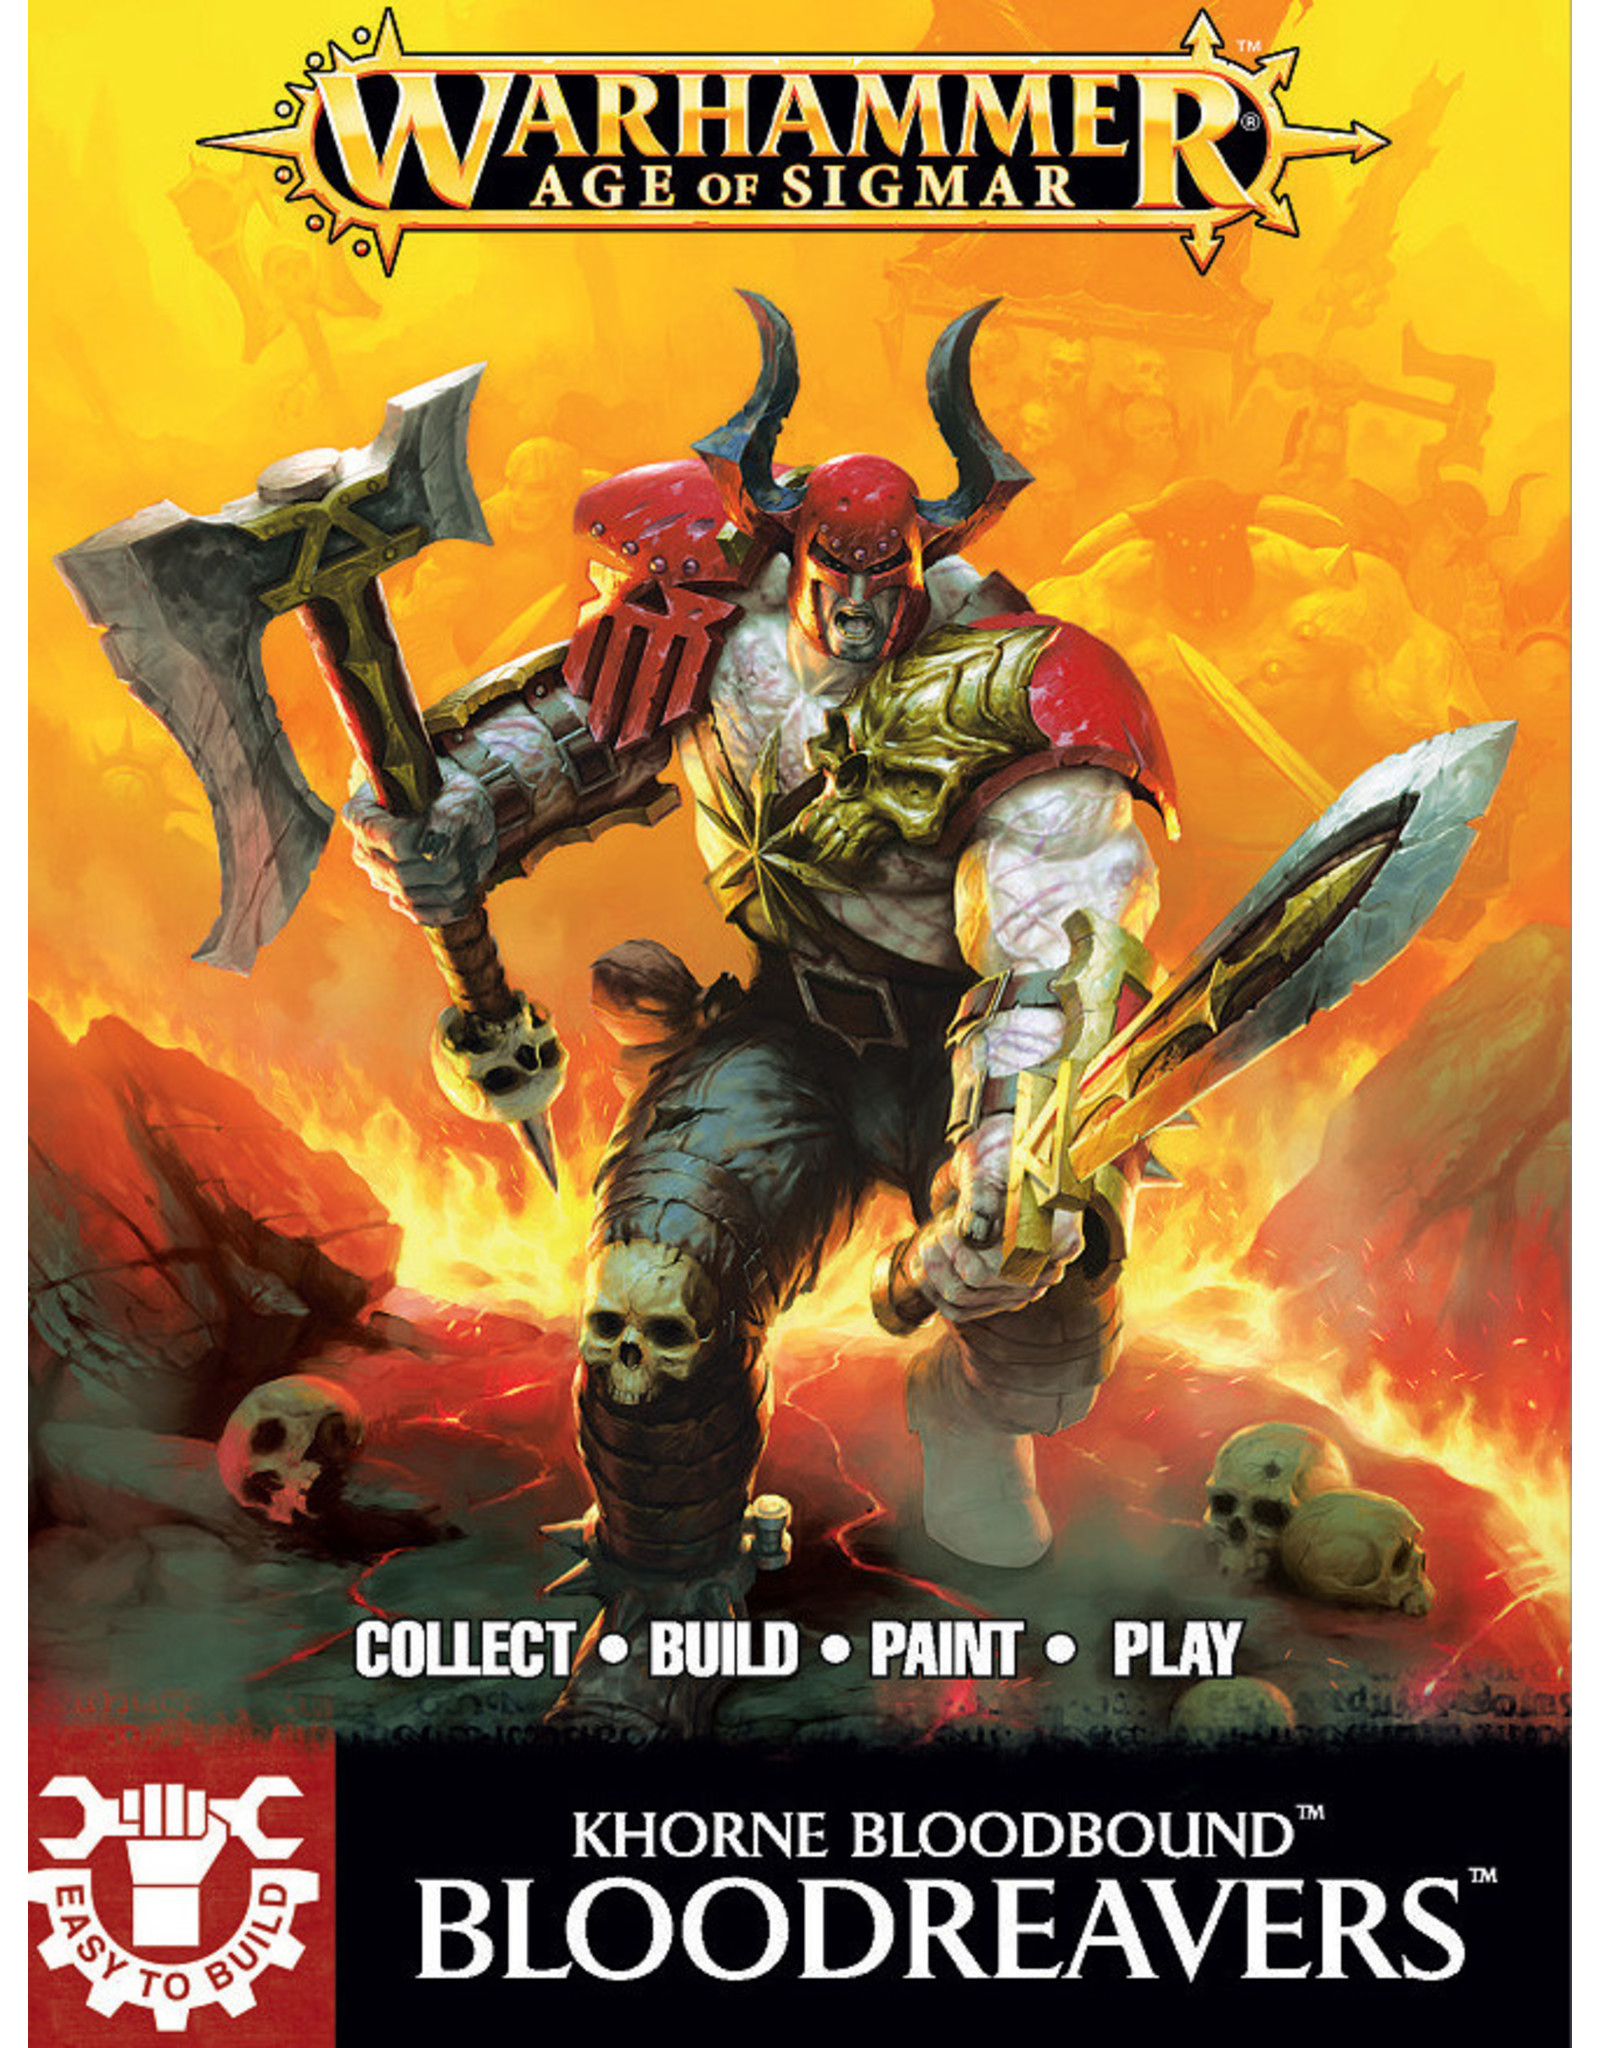 Games Workshop Khorne Bloodreavers - Warhammer